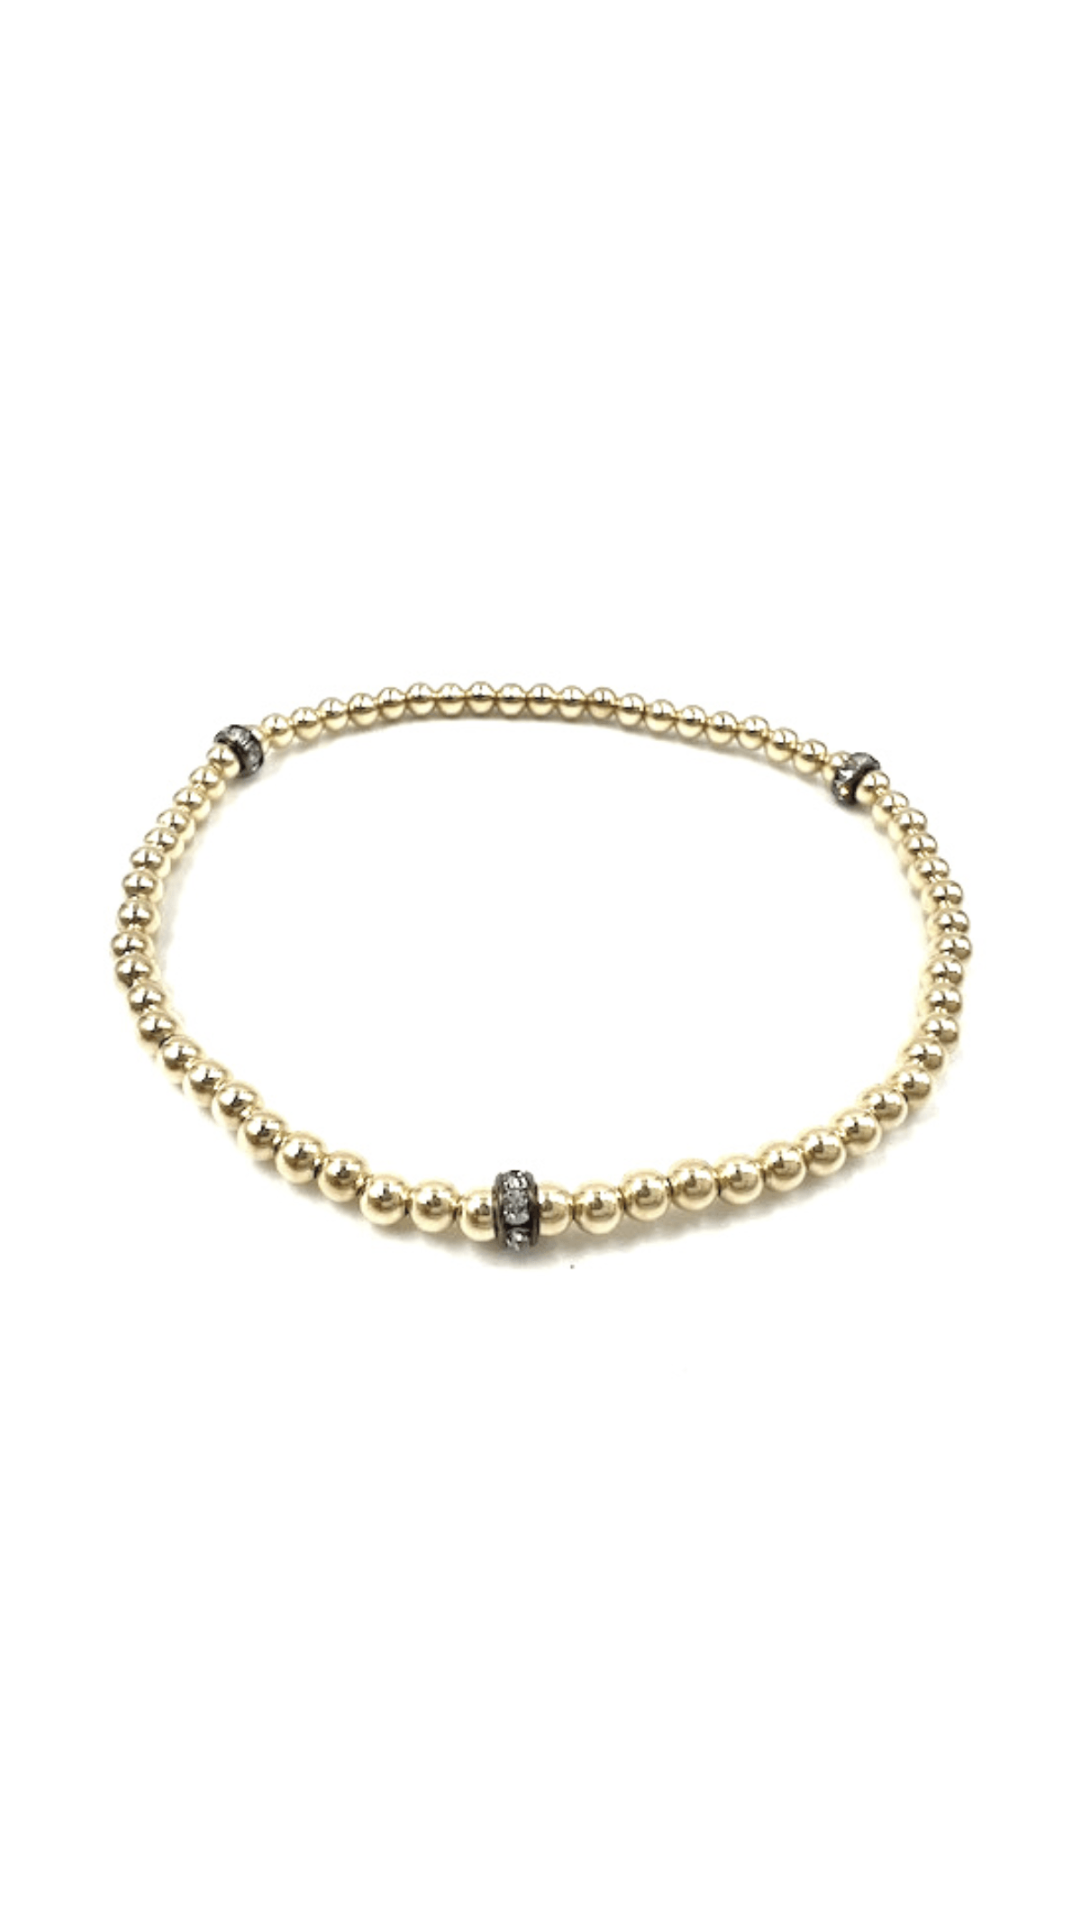 14K Gold 3mm Beads Bracelet